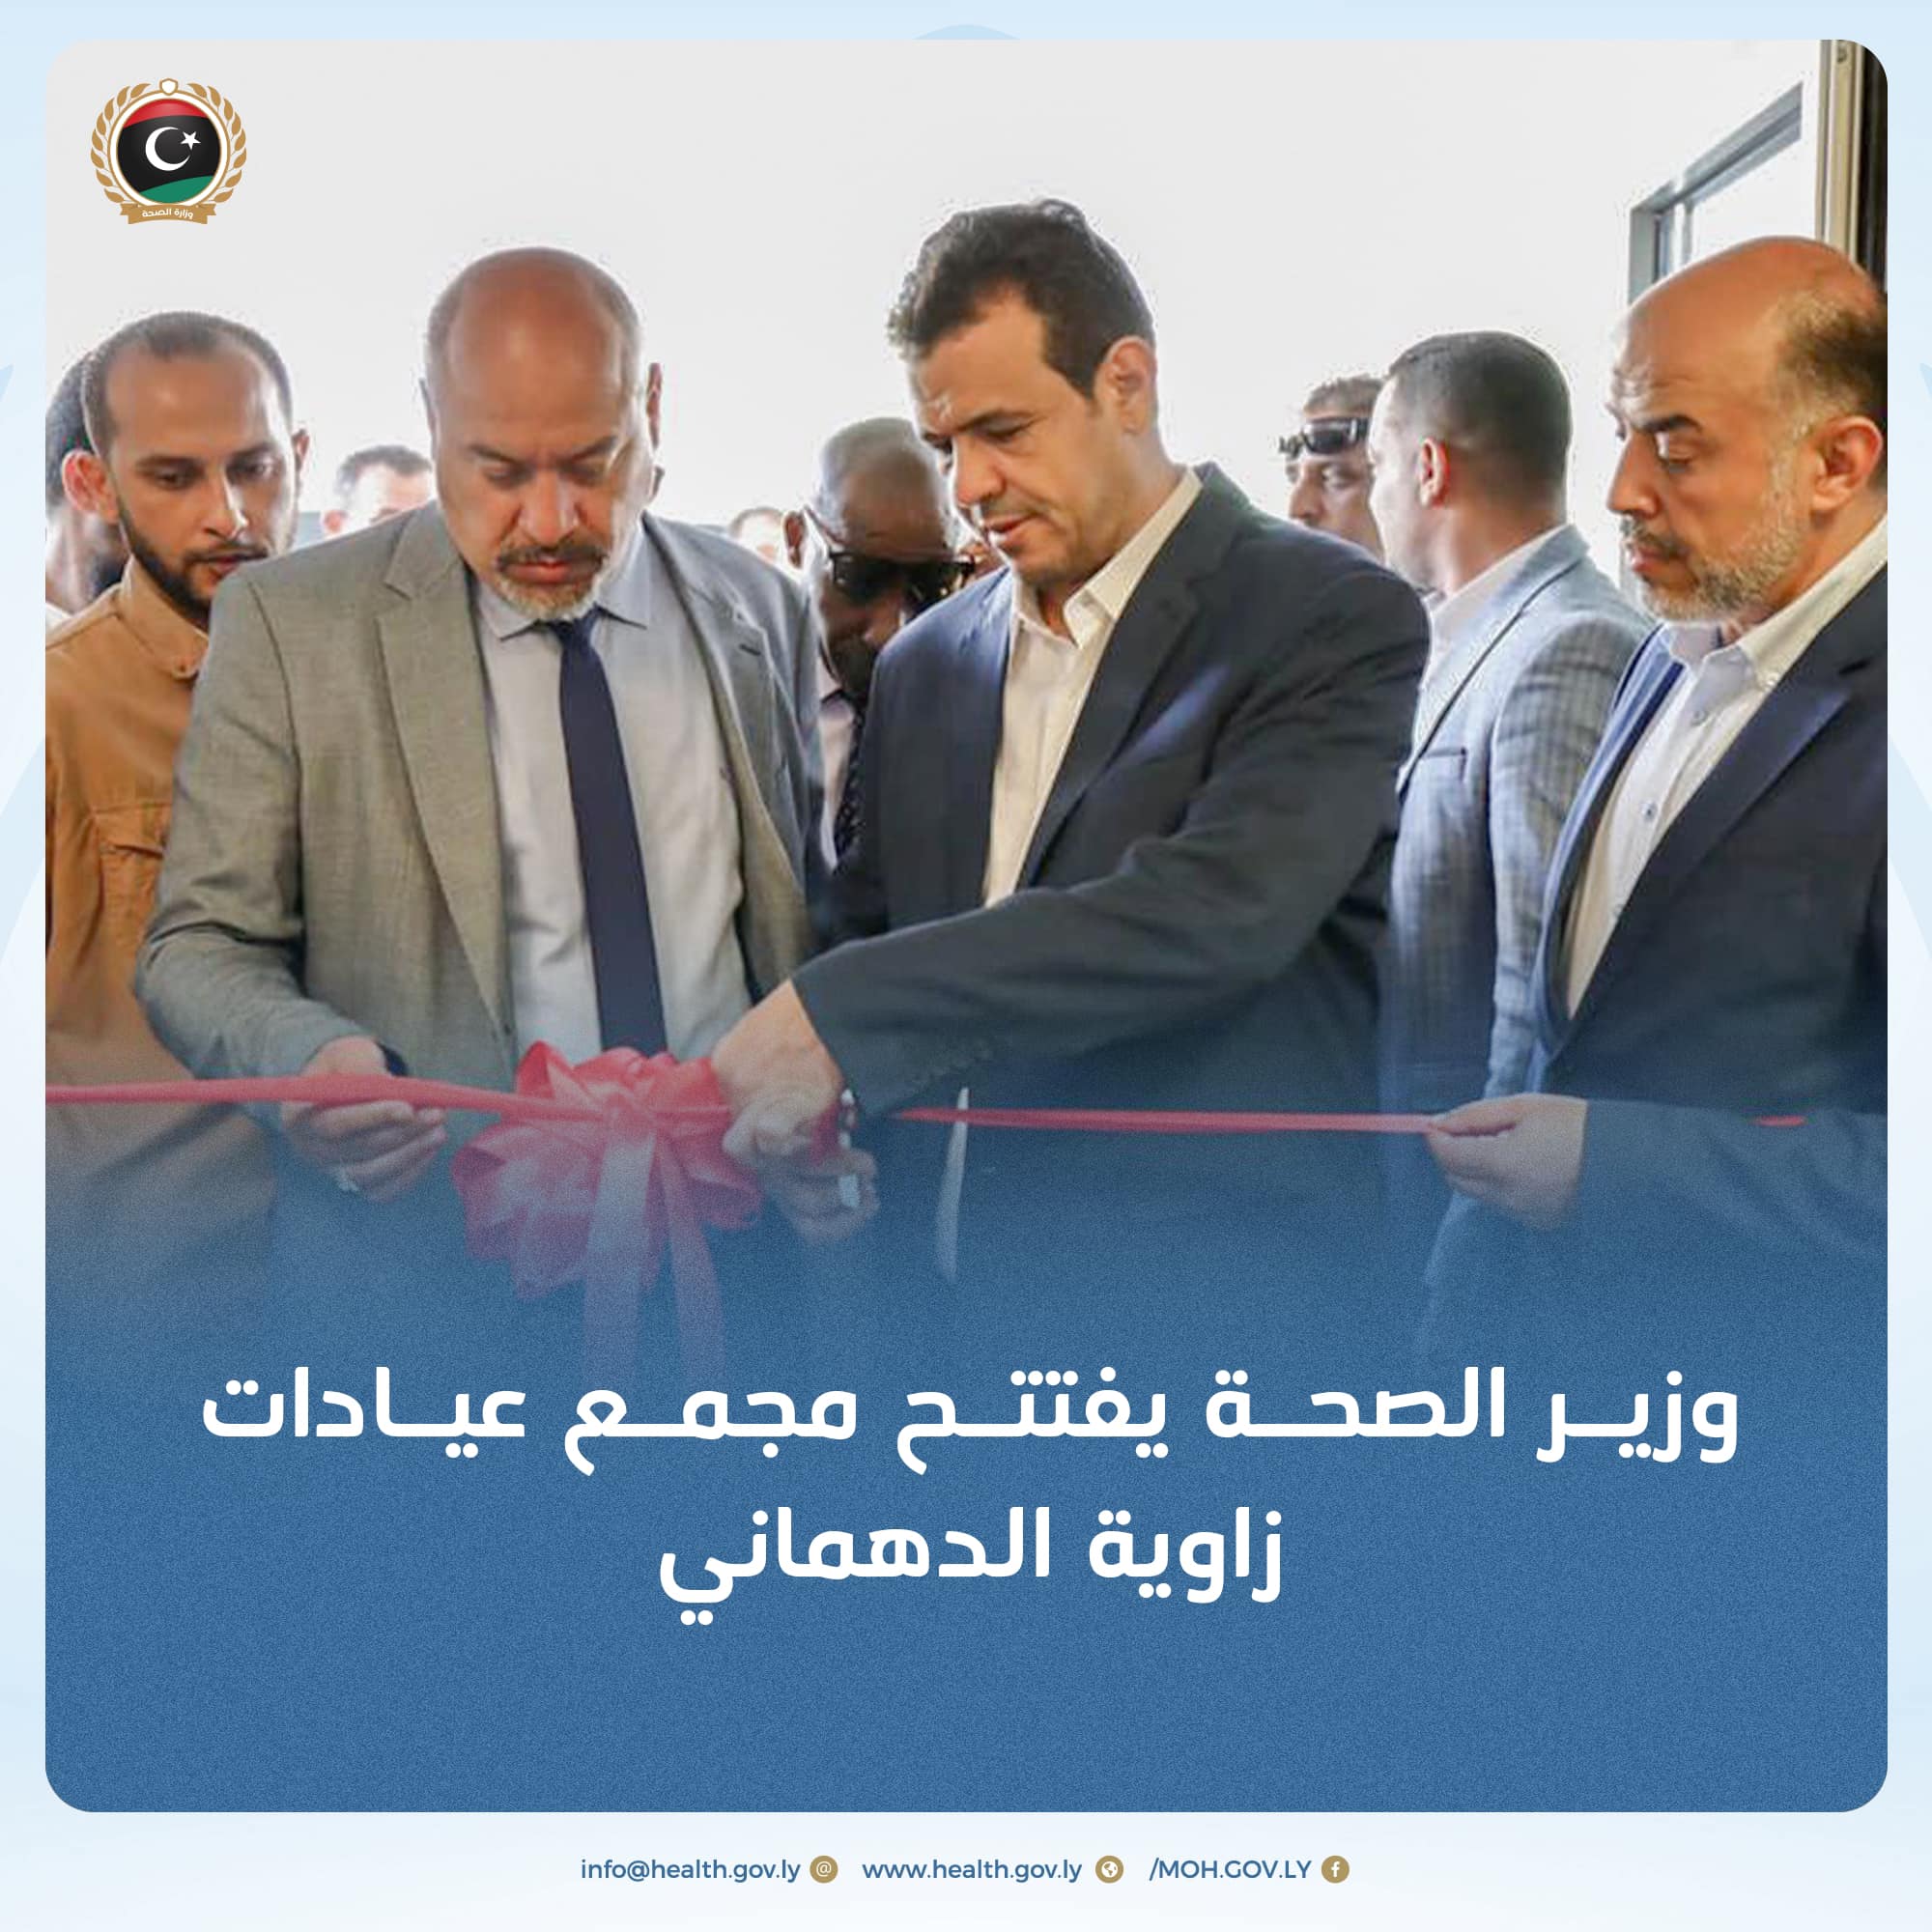 Le ministre de la Santé en charge inaugure le complexe de cliniques Zawiya Dahmani à Tripoli.